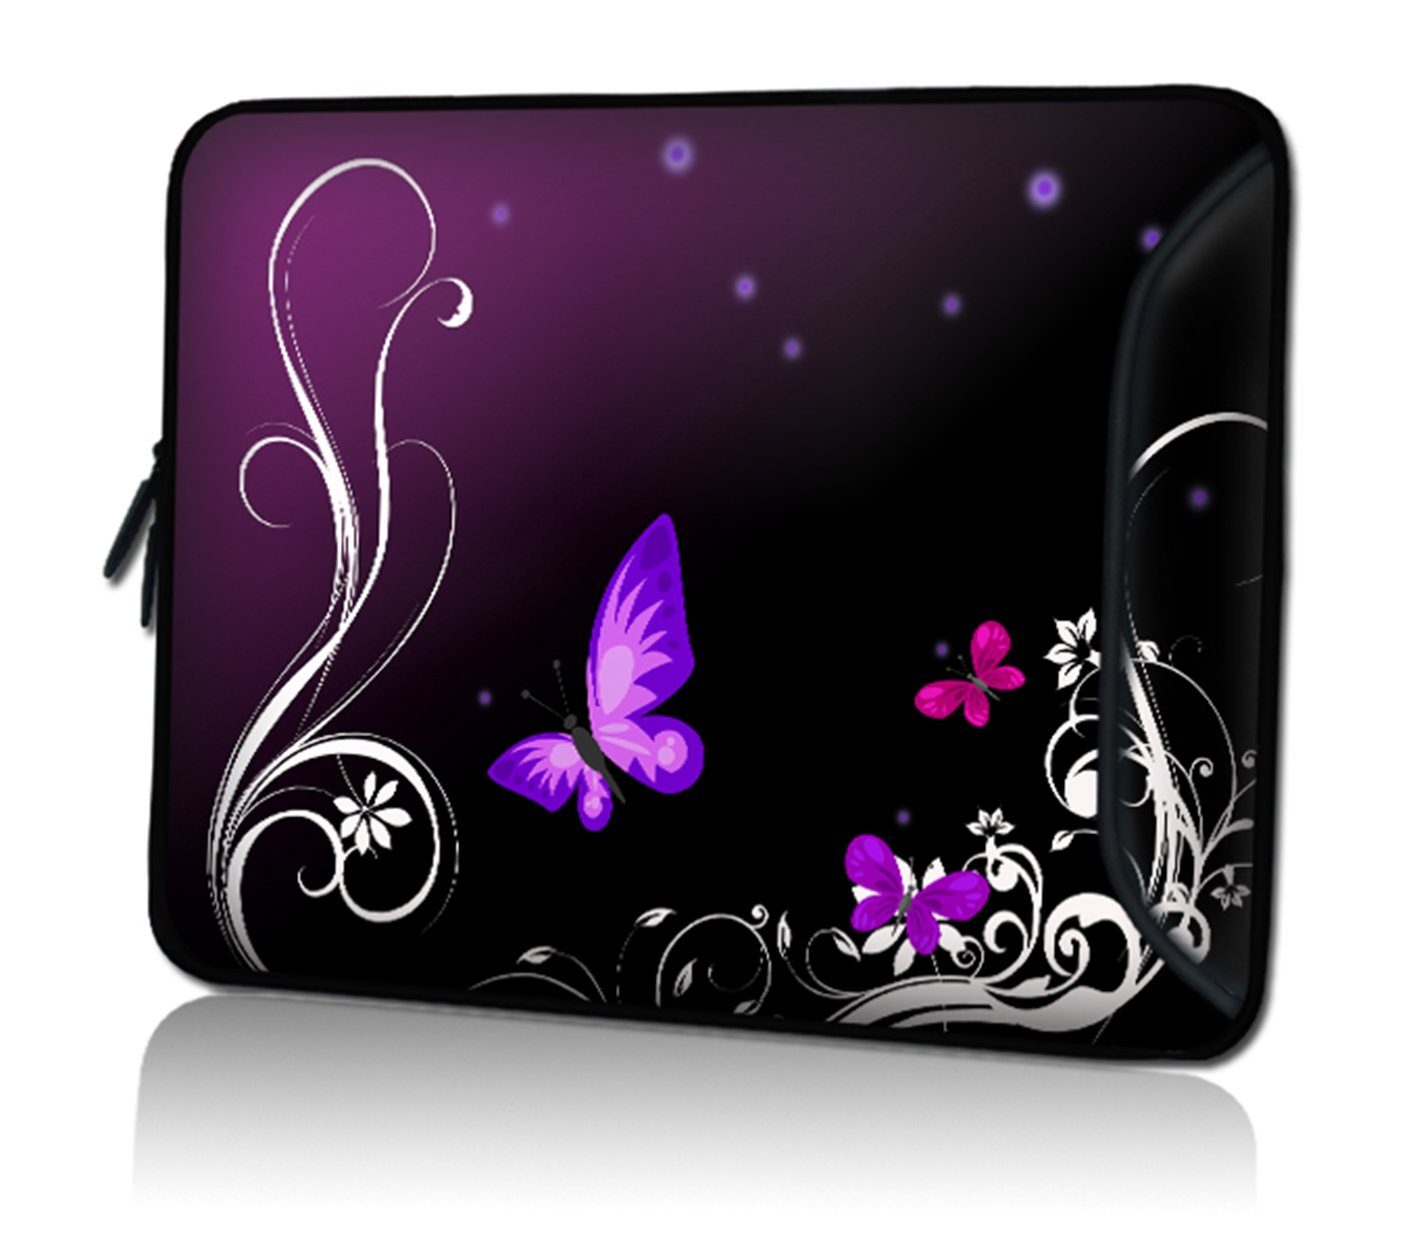 wortek Laptoptasche für Laptops bis 15,4", Schmetterling Schwarz Lila, Wasserabweisend, inkl. Zubehörfach